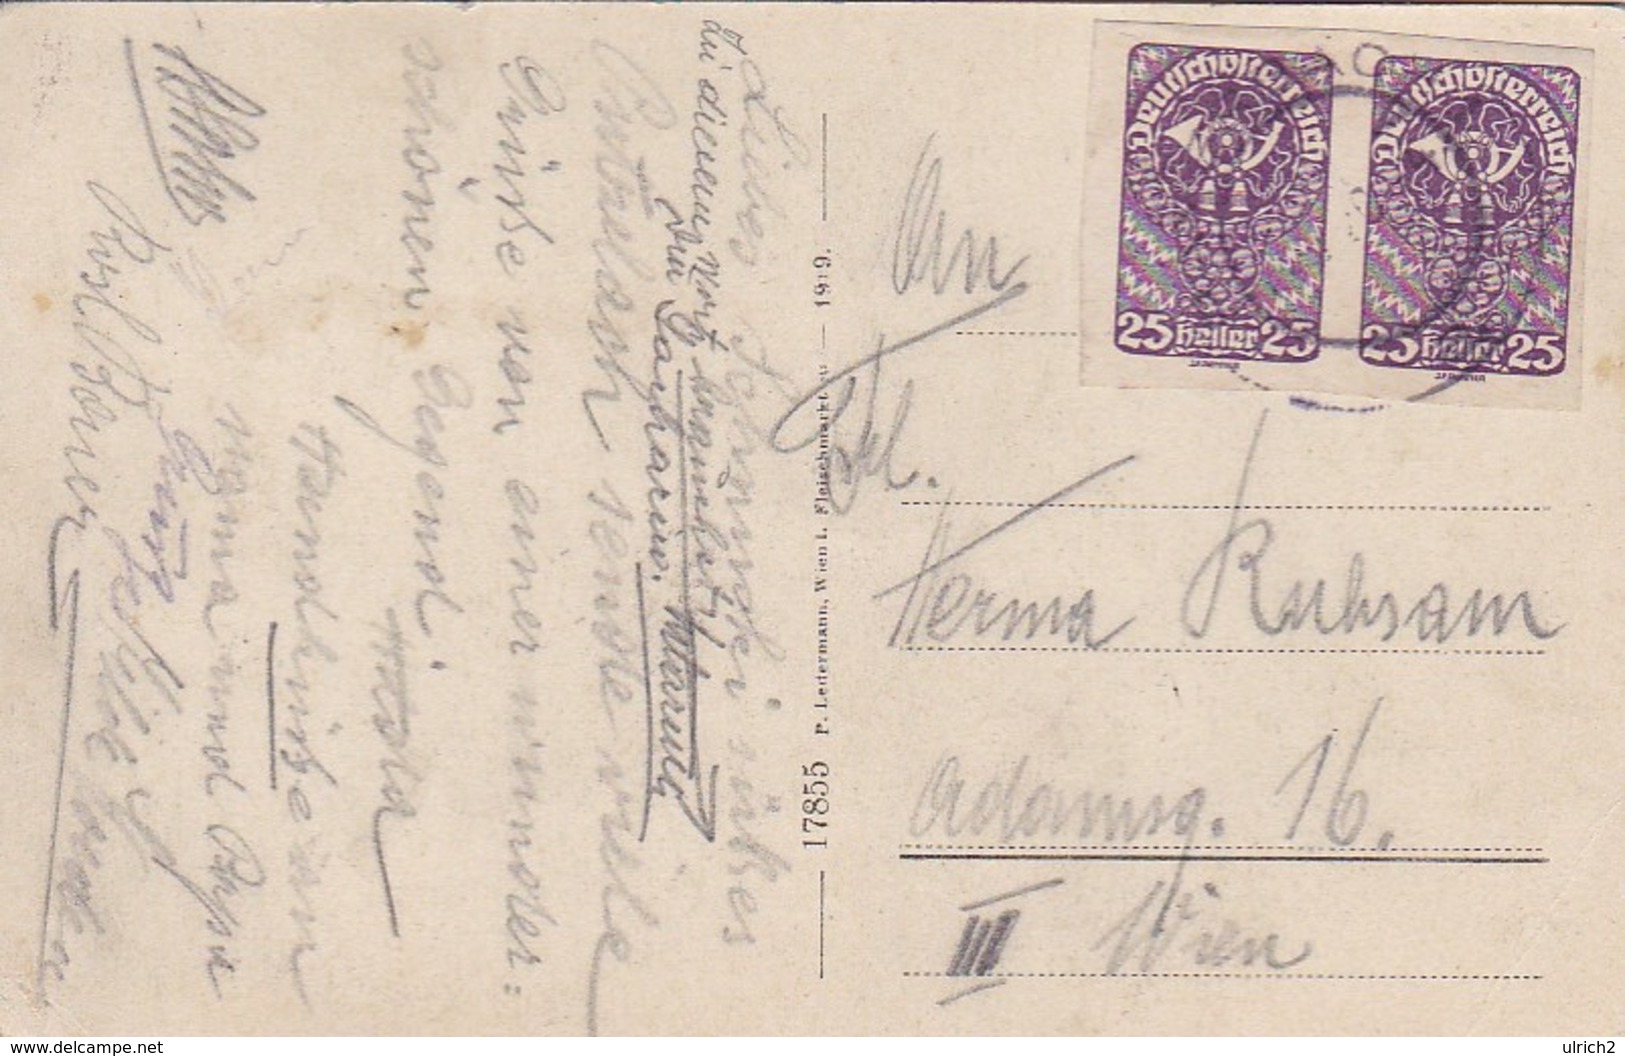 AK Kurort Reichenau - Raxalpe - Ca. 1919 (41282) - Raxgebiet